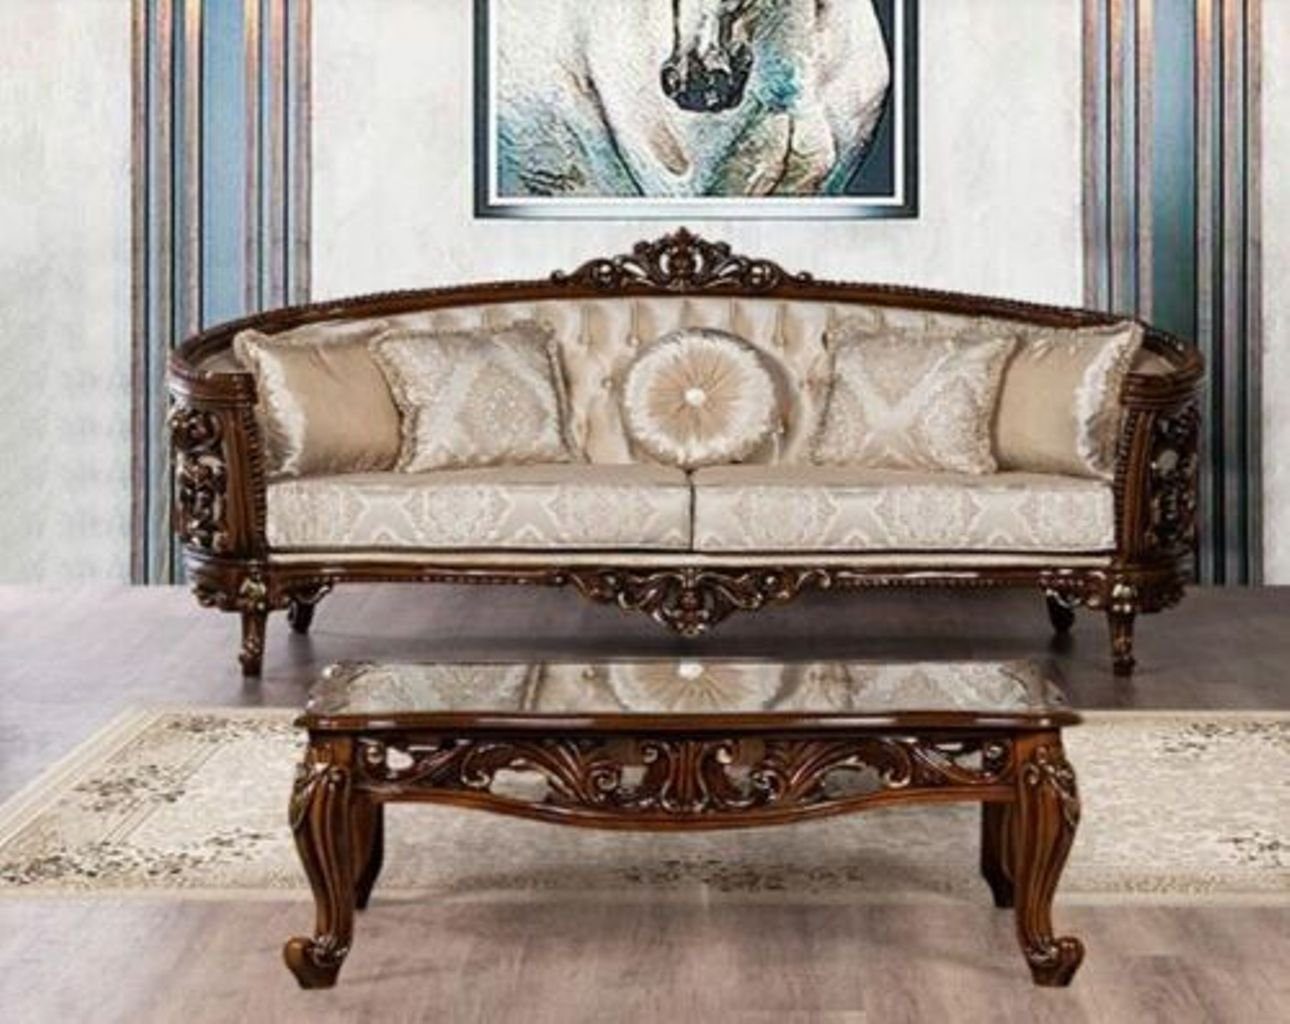 JVmoebel 3-Sitzer, Dreisitzer Sofa 3 Sitz Klassische Möbel Stil Barock Rokoko Luxus Neu